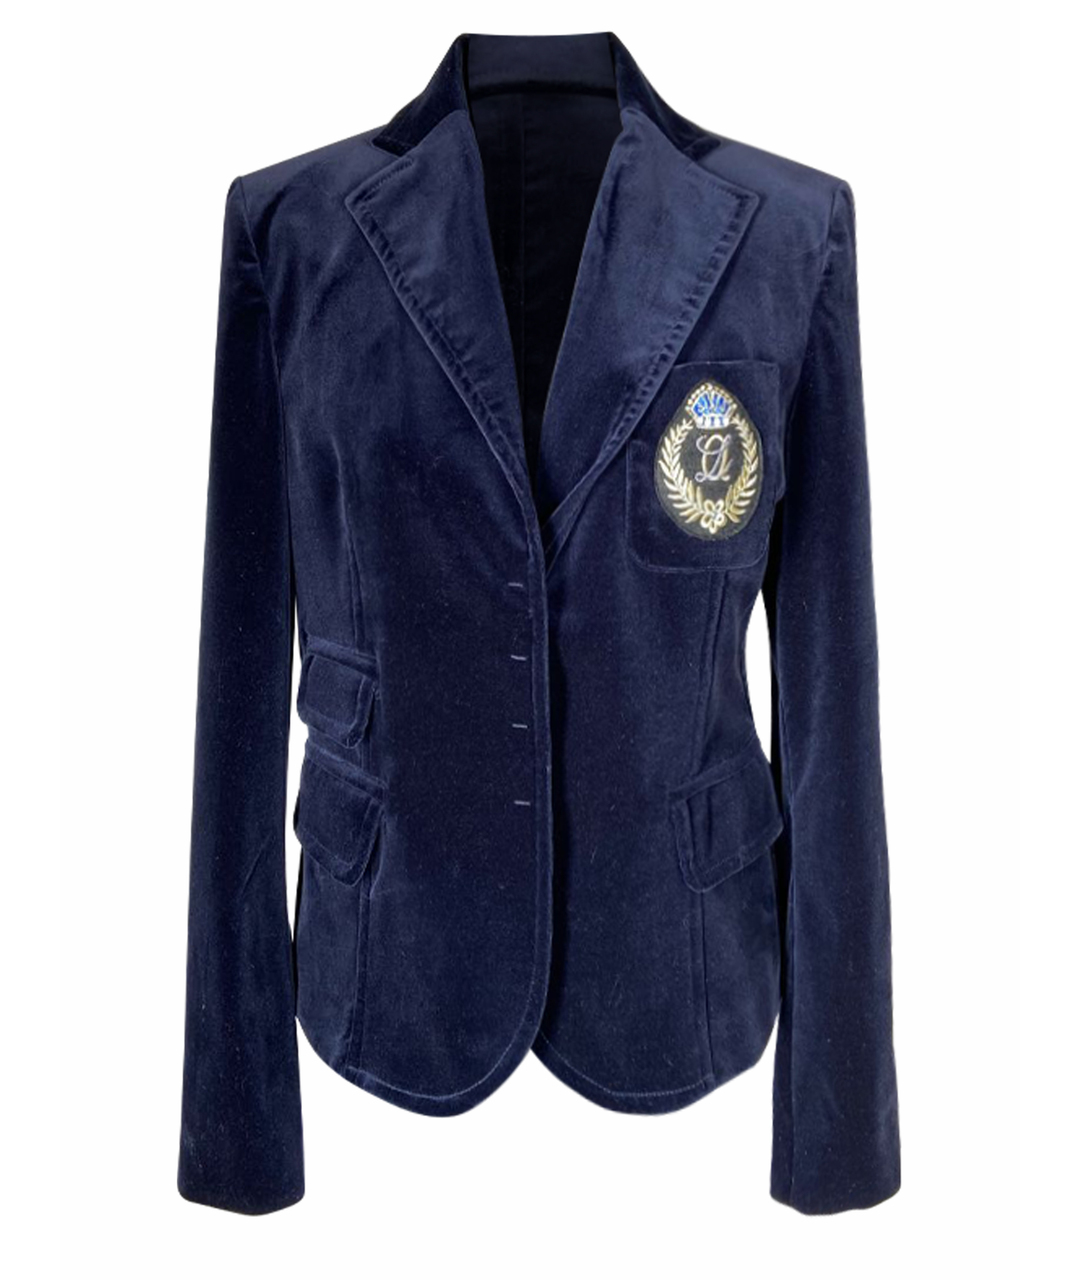 Marco Lombardi Синий бархатный жакет/пиджак, фото 1